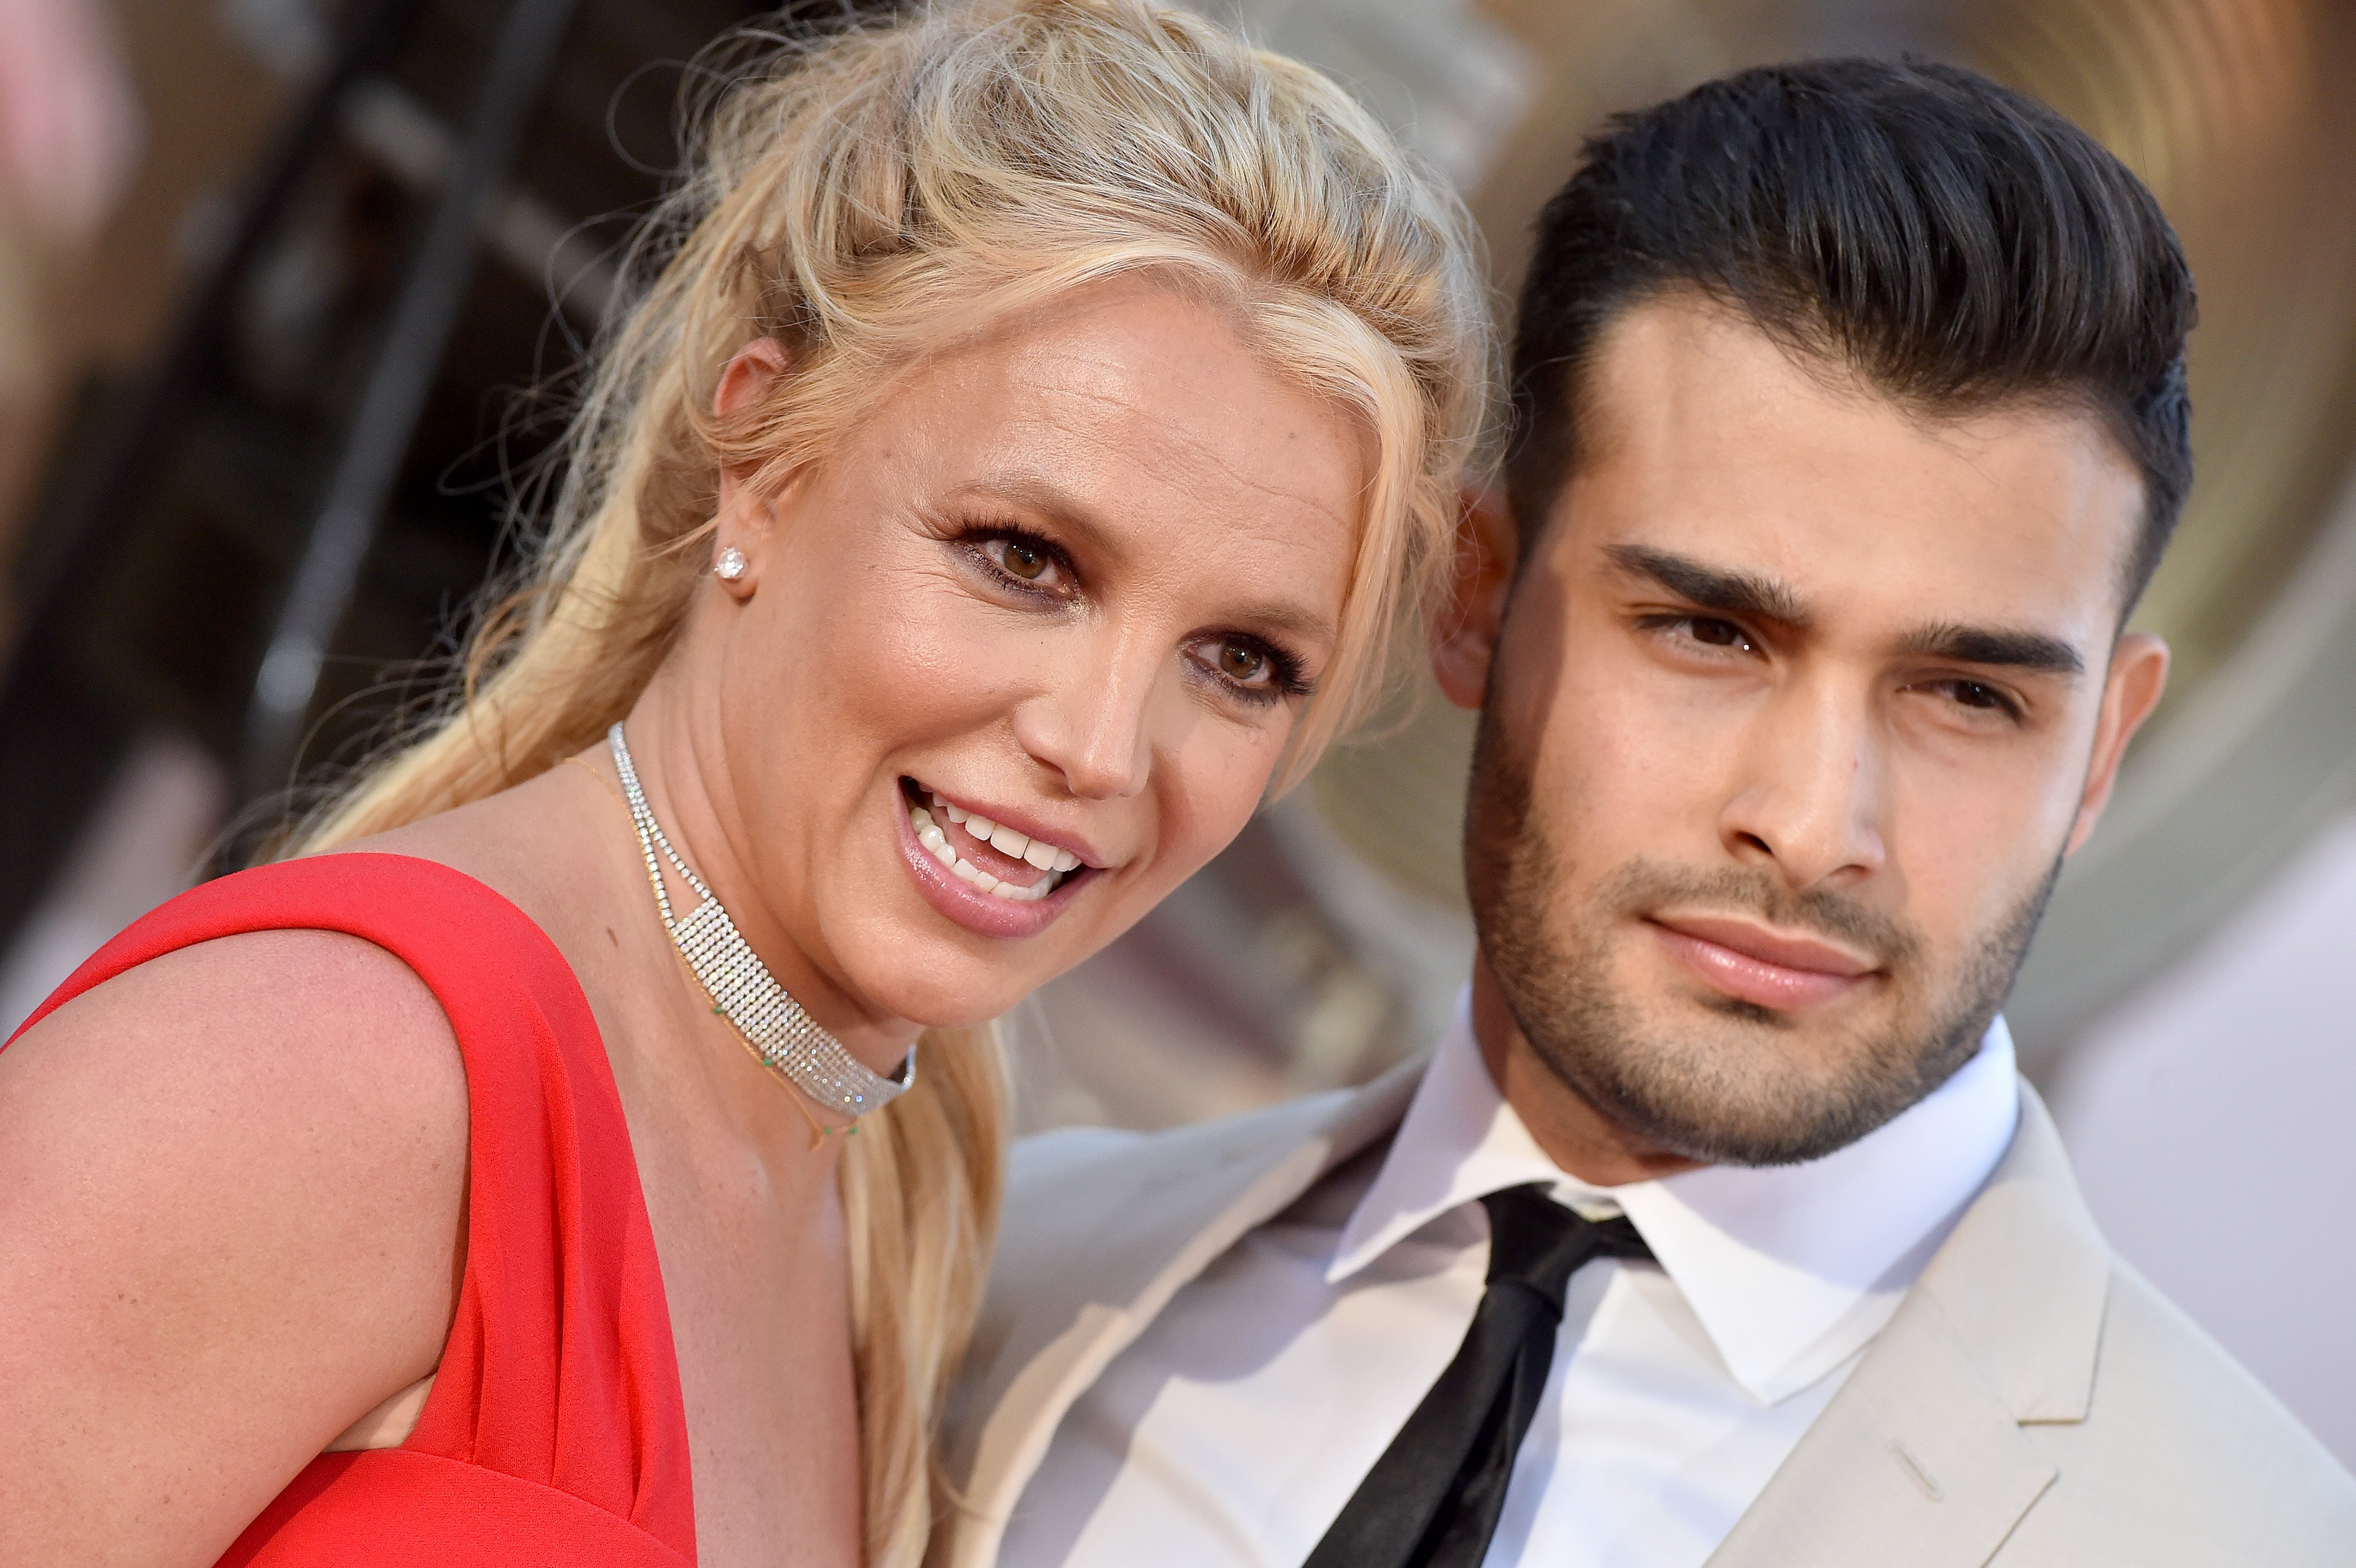 Efter dramatisk høring Britney Spears flygter til Hawaii med kæresten SE og HØR